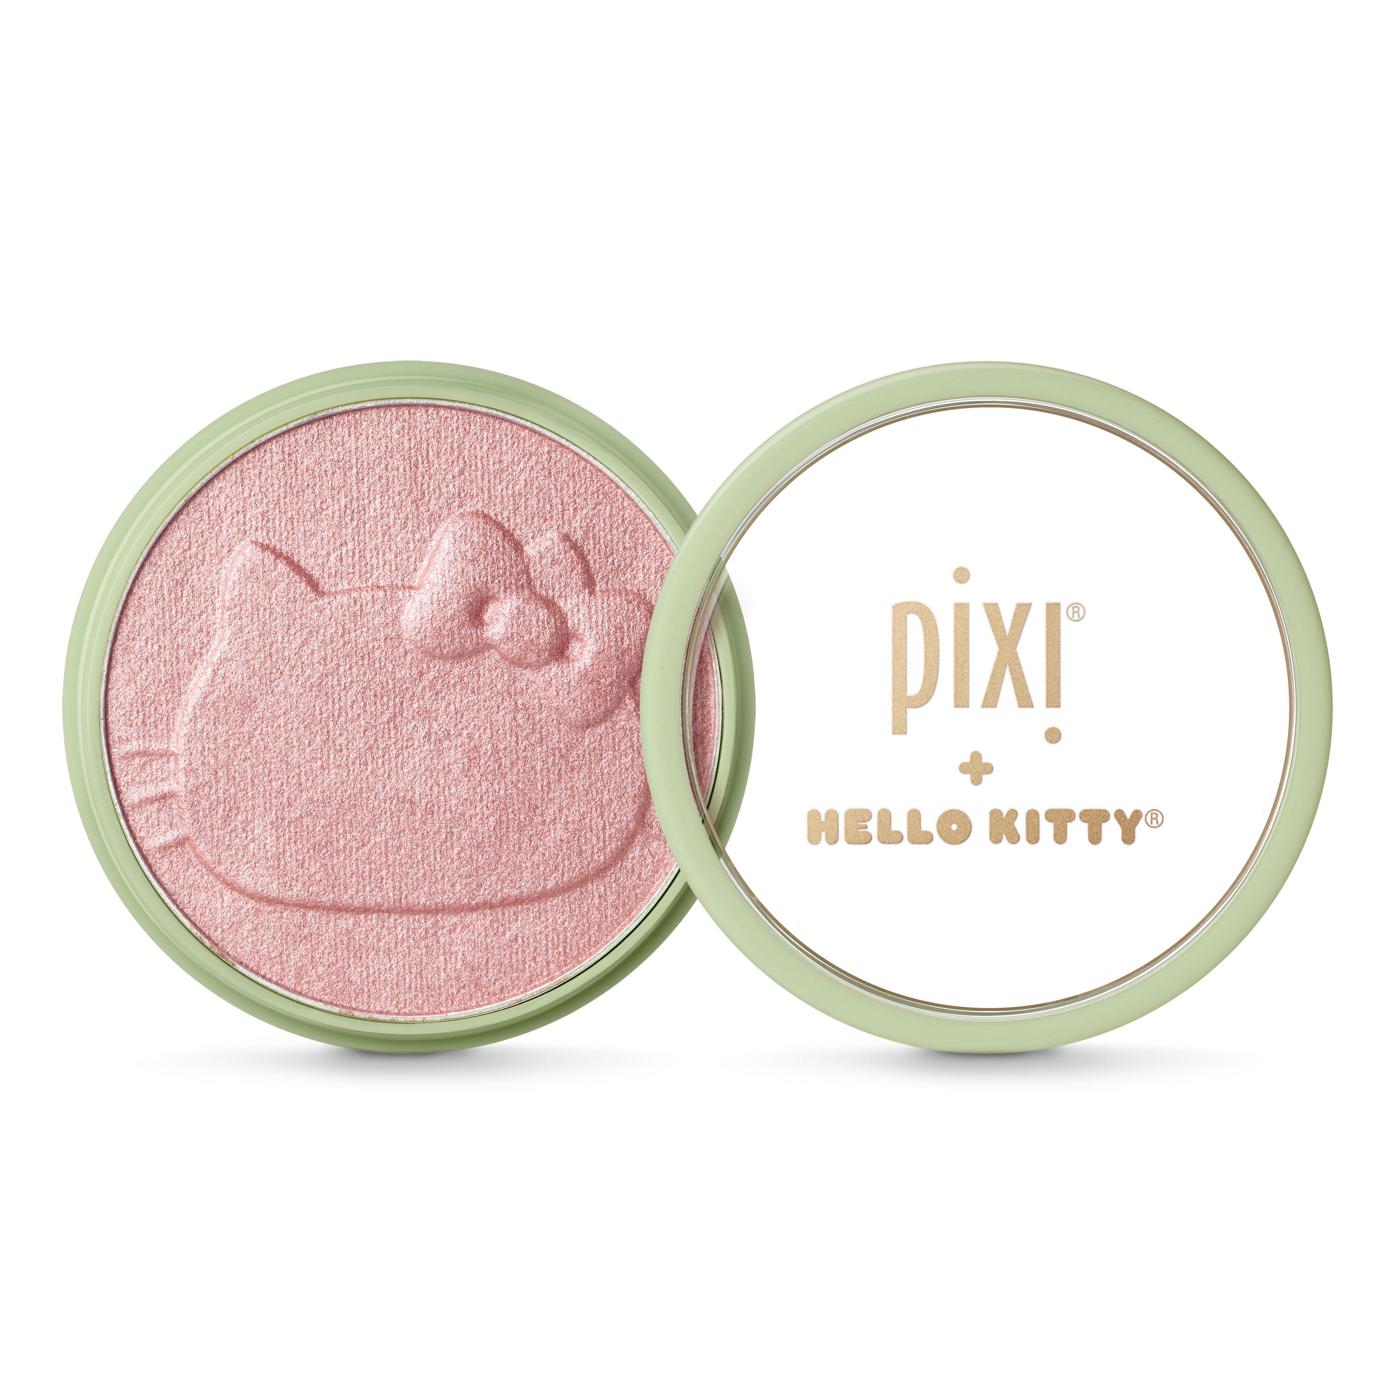 Pixi Hello Kitty Glow-y Powder; image 2 of 4